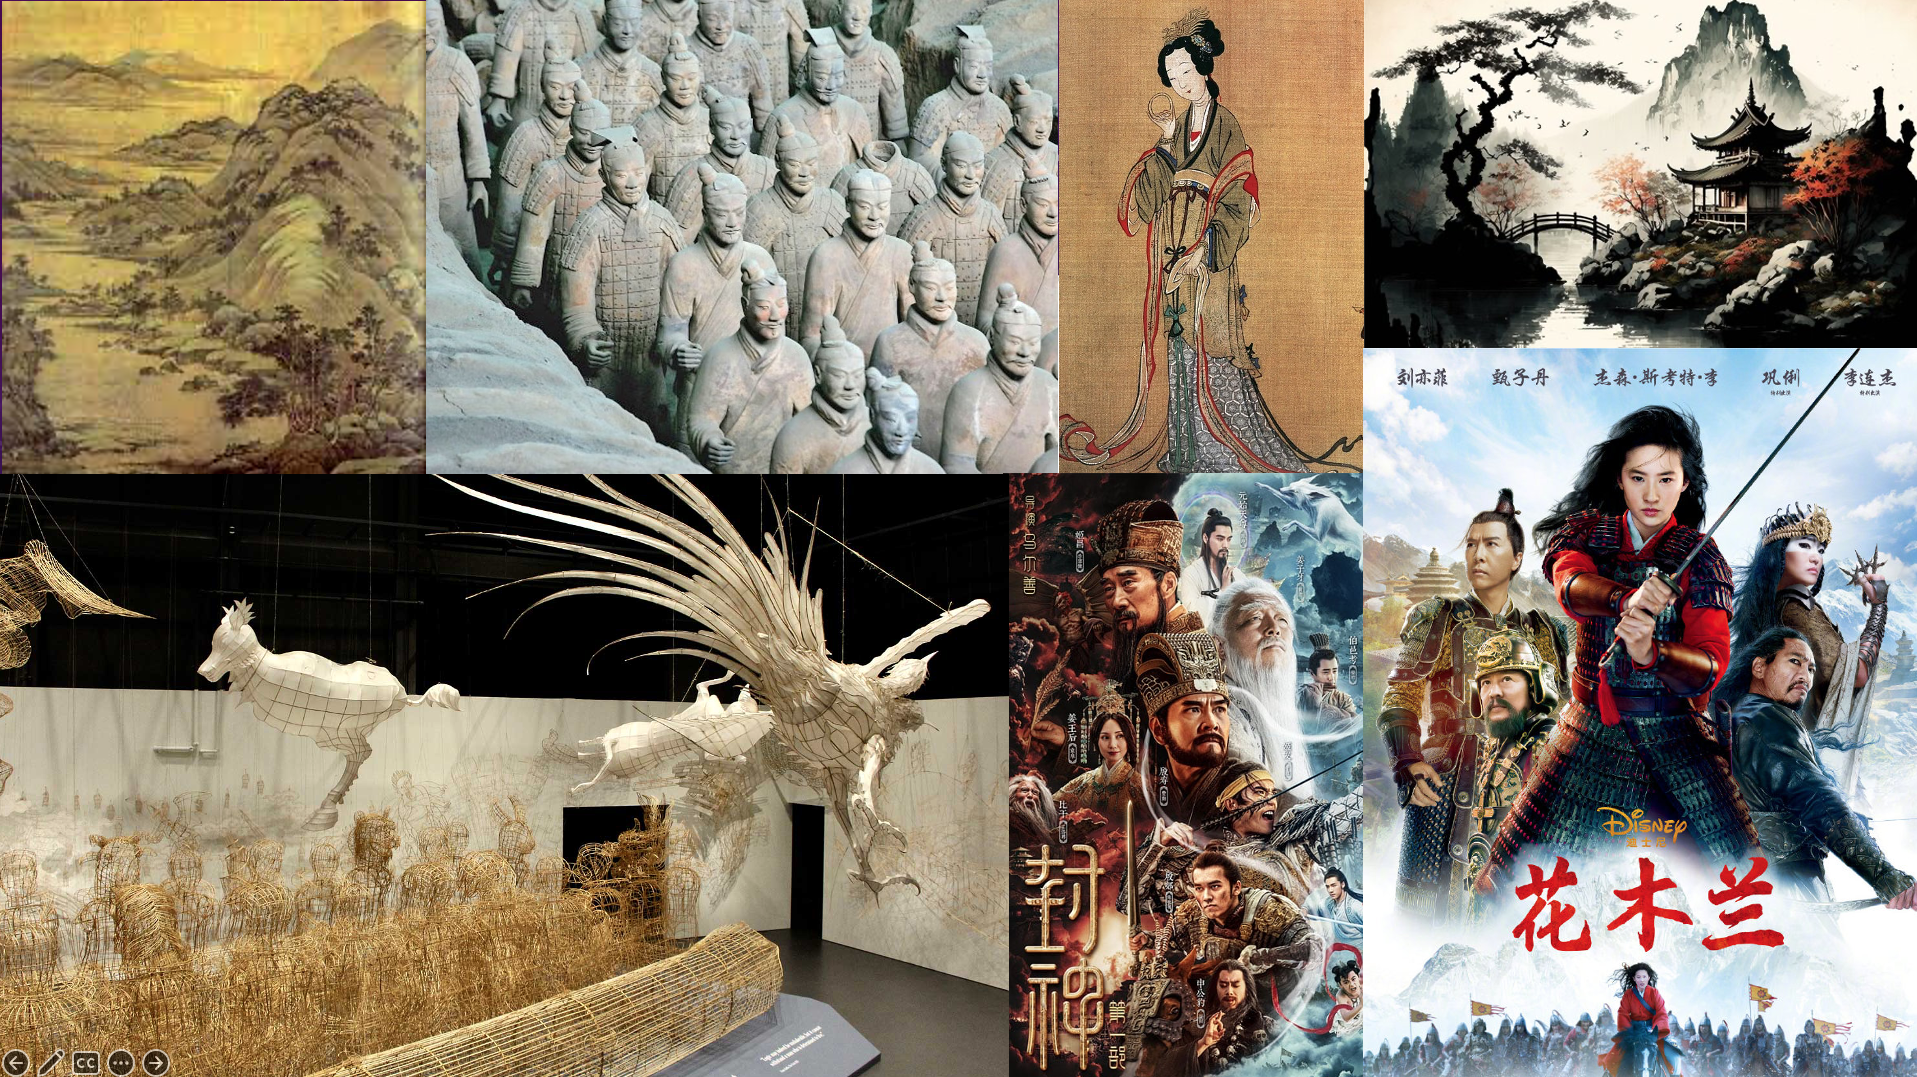 Cultura E Poder Da China: Da Arte Milenar Ao Século 21